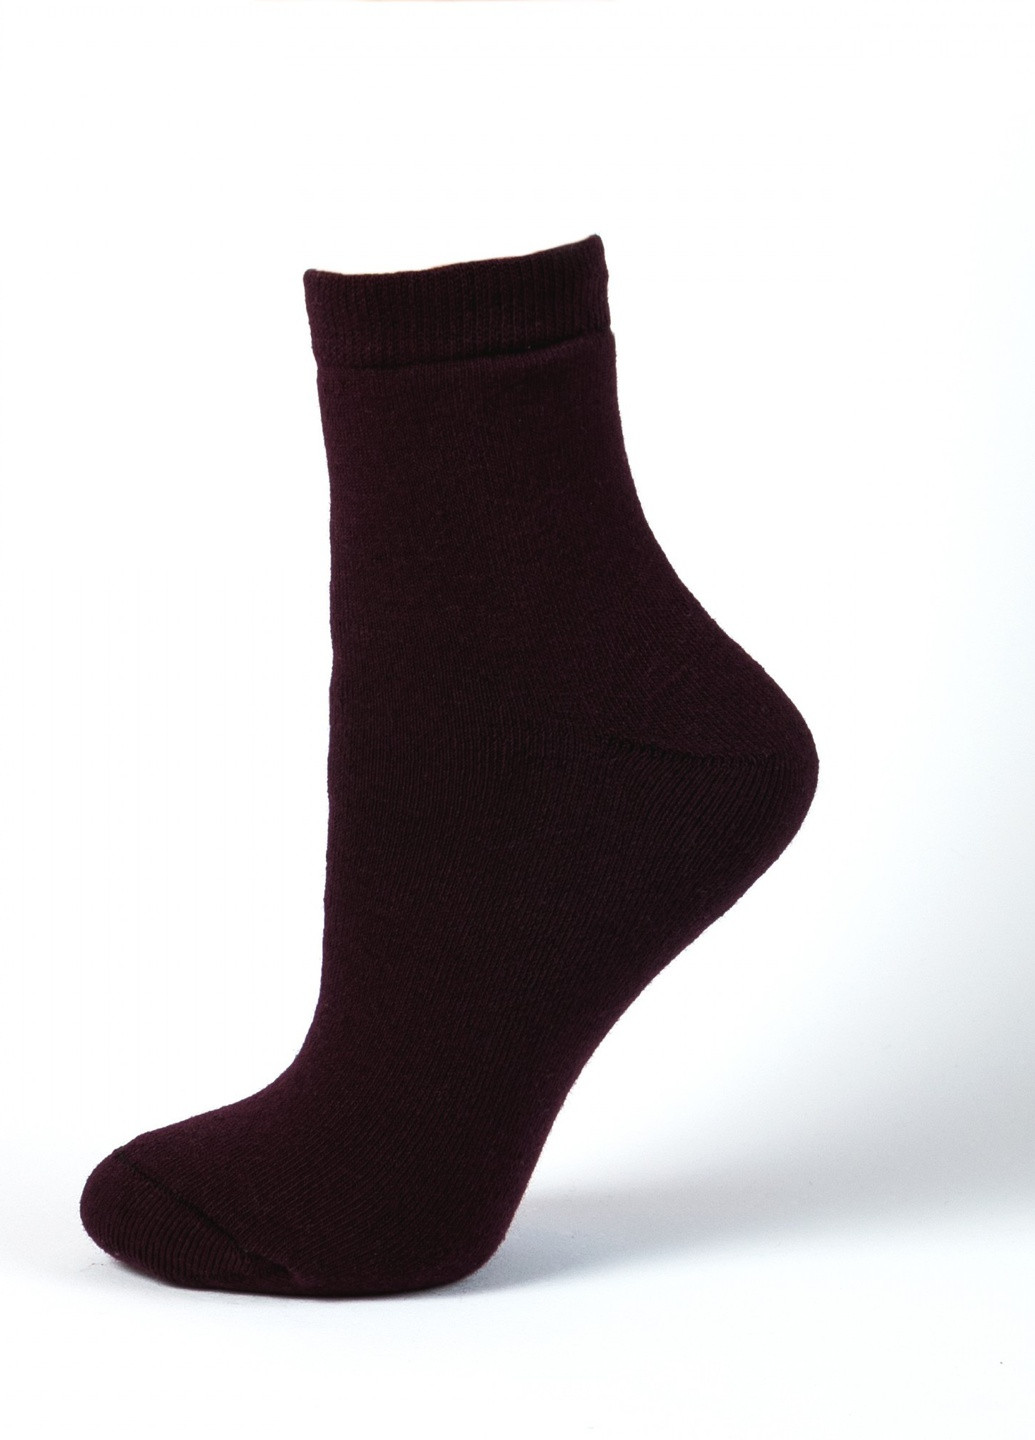 Шкарпетки плюш (махра) ТМ "Нова пара" 138 НОВА ПАРА середня висота (257155529)